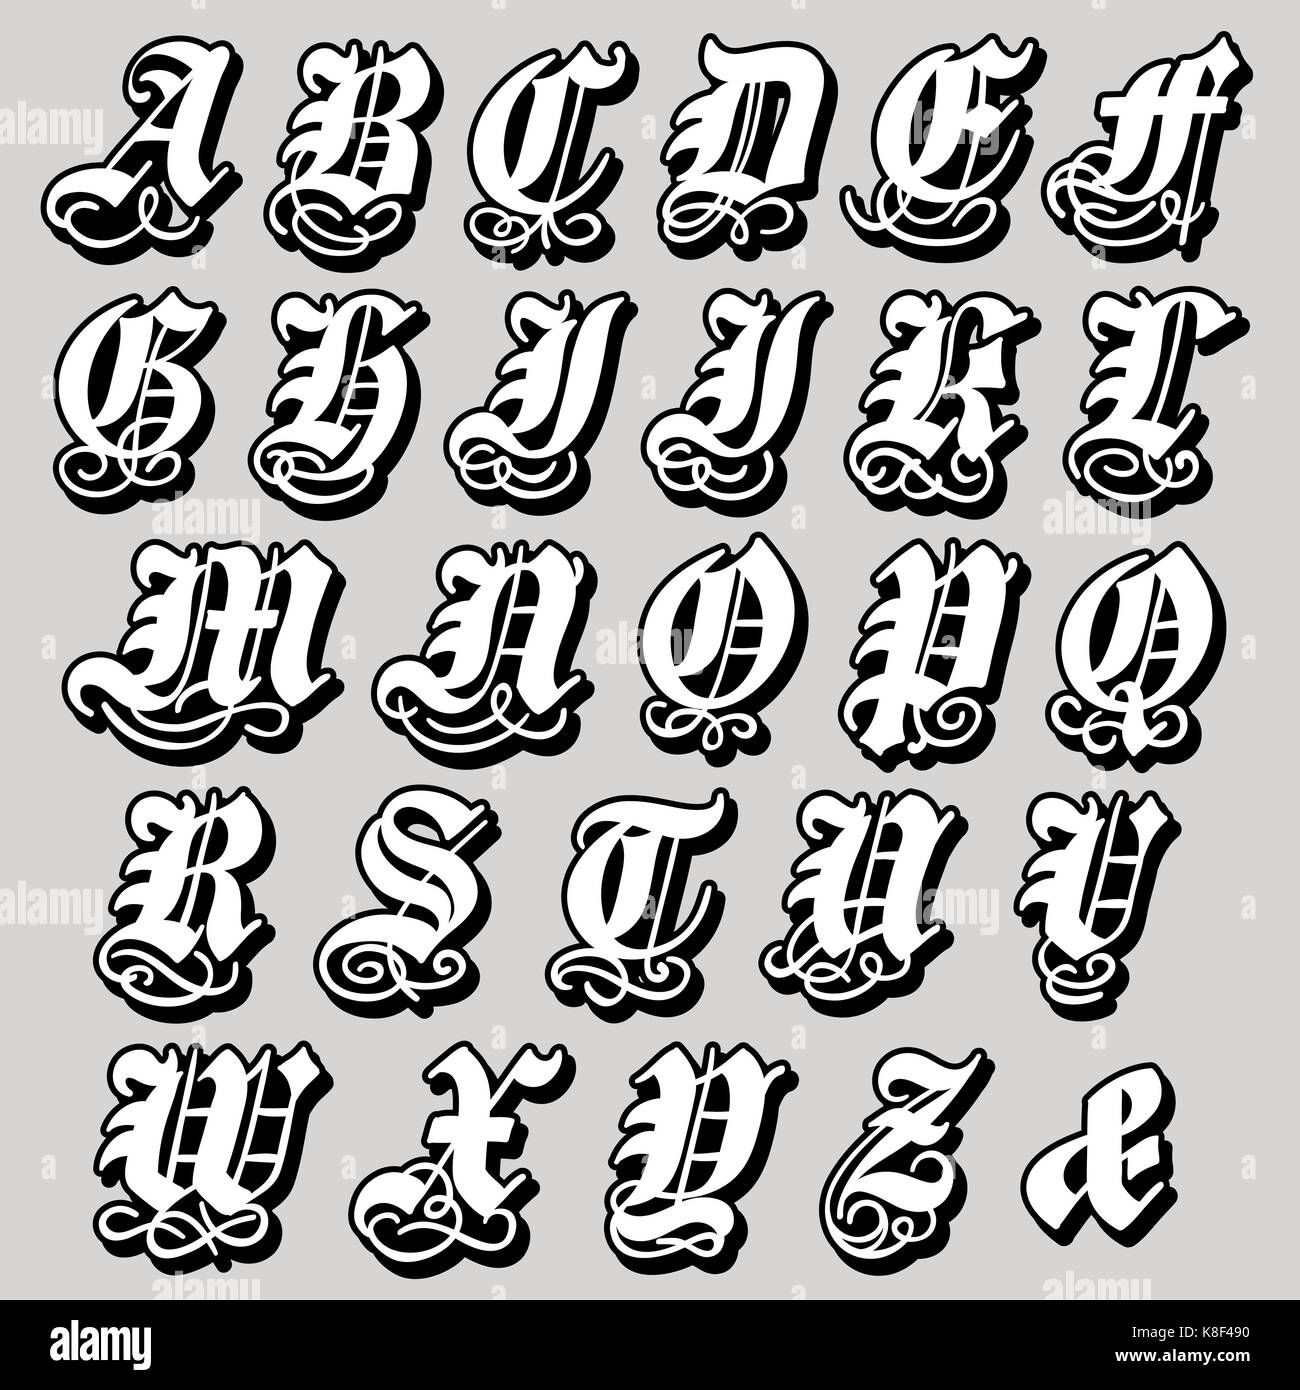 Completare maiuscolo alfabeto gotico in grassetto nero doodle con volute ornamentali e fiorisce, illustrazione di vettore isolato su bianco Illustrazione Vettoriale